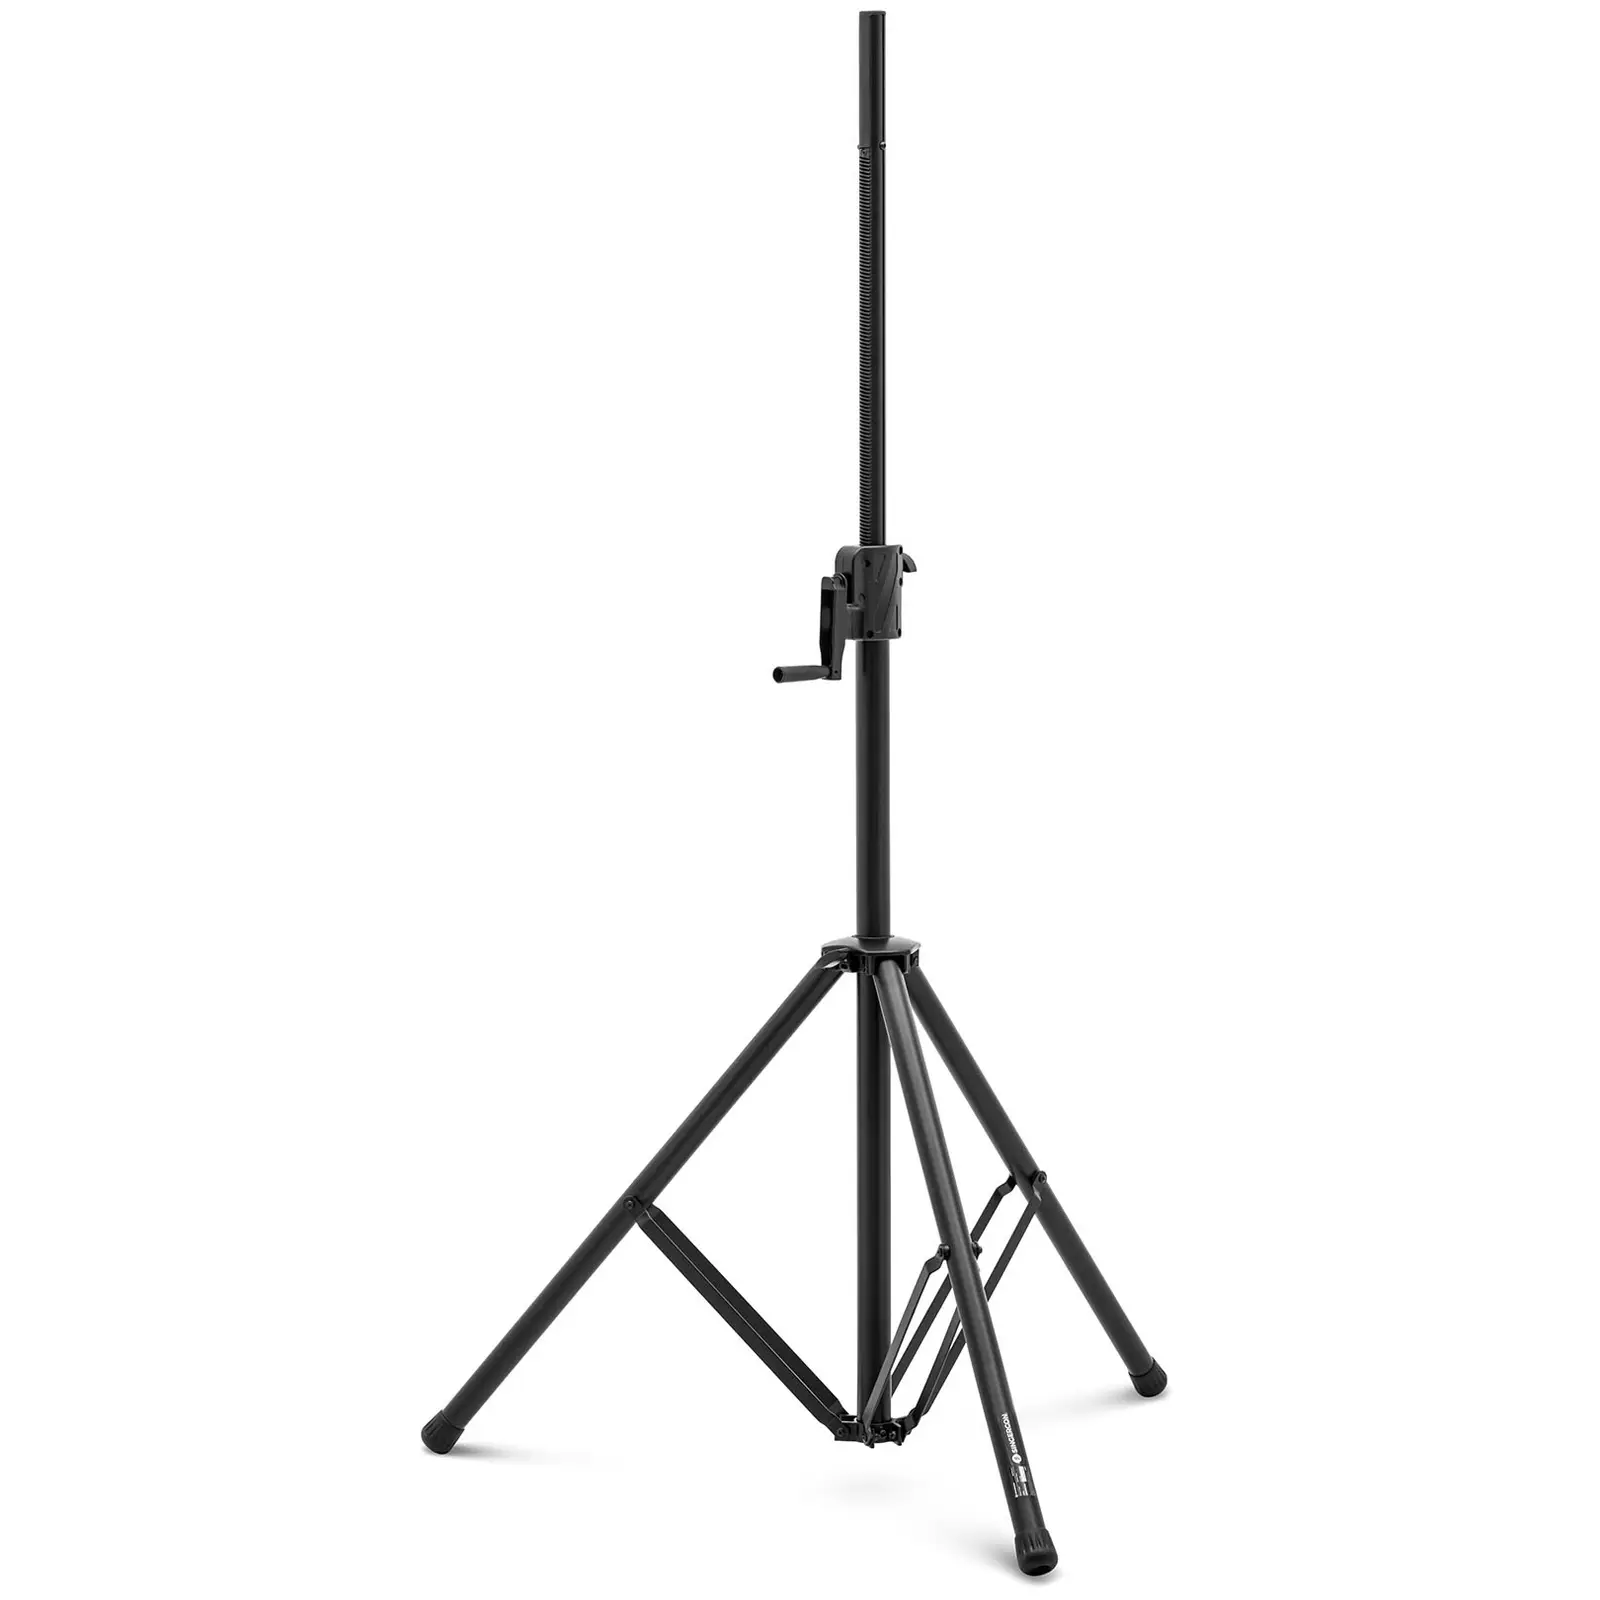 Stativ - für Lautsprecher und Beleuchtung - faltbar - bis 70 kg - 1450 - 2400 mm - Aluminium